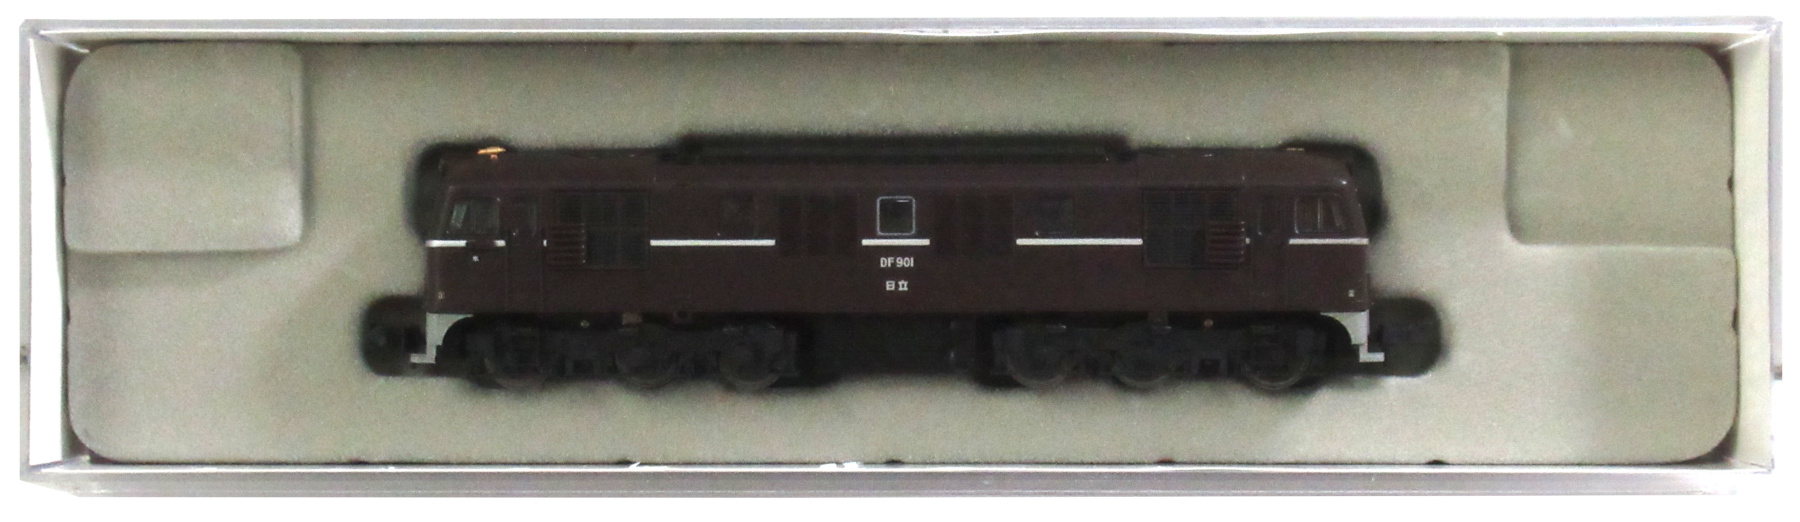 公式]鉄道模型(メーカー別(N)、マイクロエース、機関車)カテゴリ 